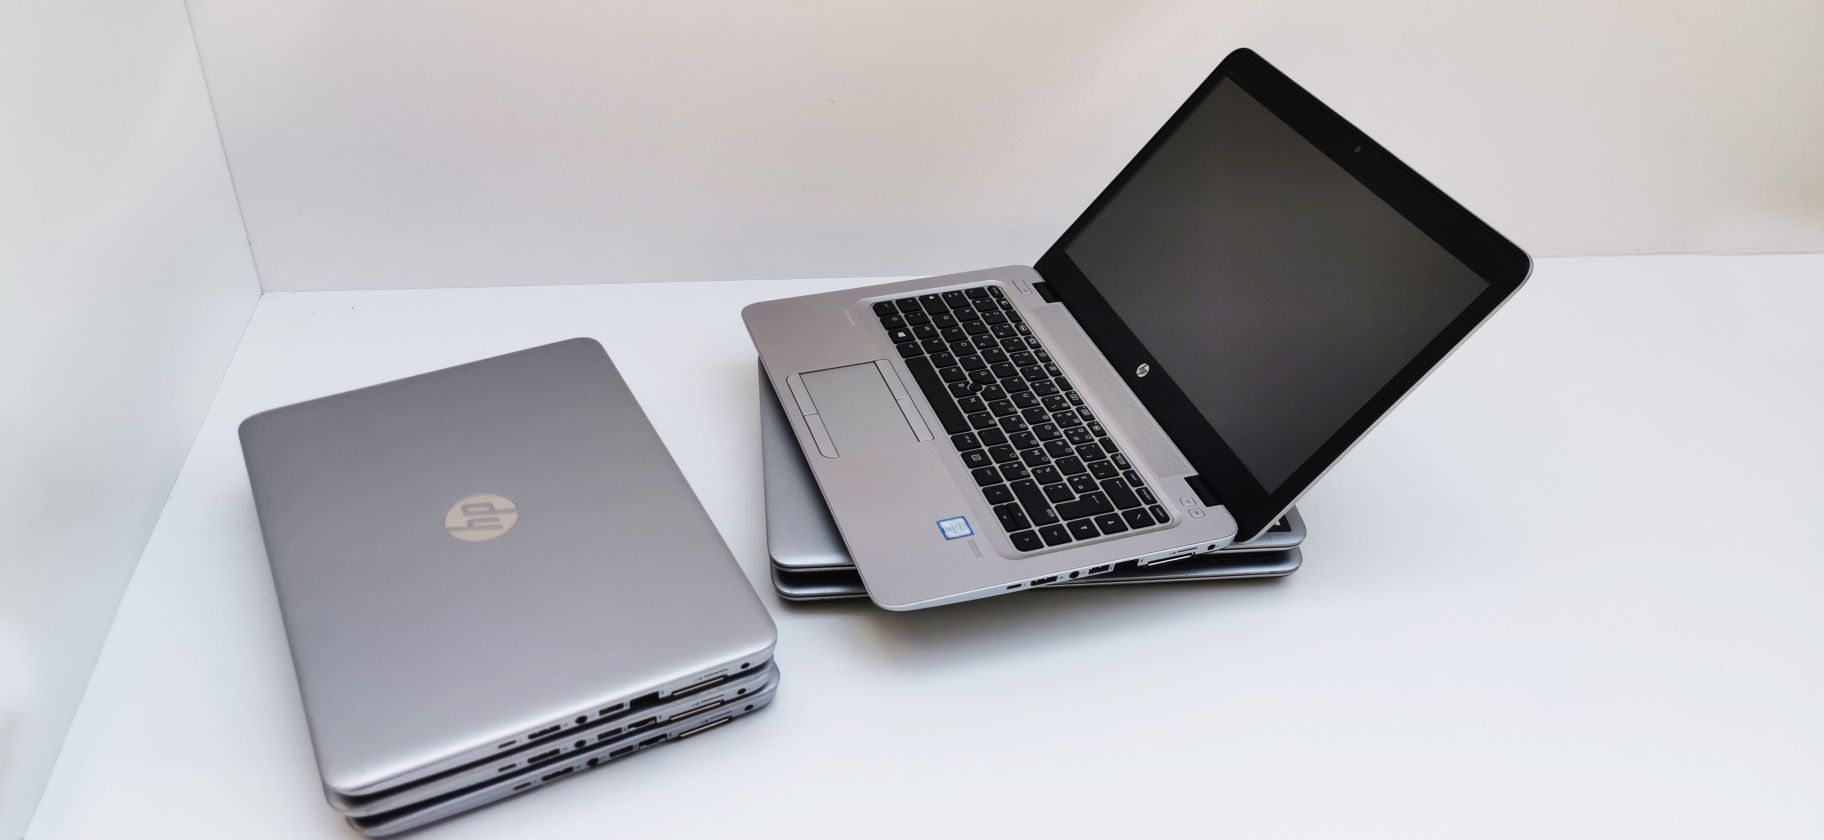 Laptopuri HP EliteBook 820 G3 i5 6200U 8 GB DDR4 256 GB SSD Intel HD